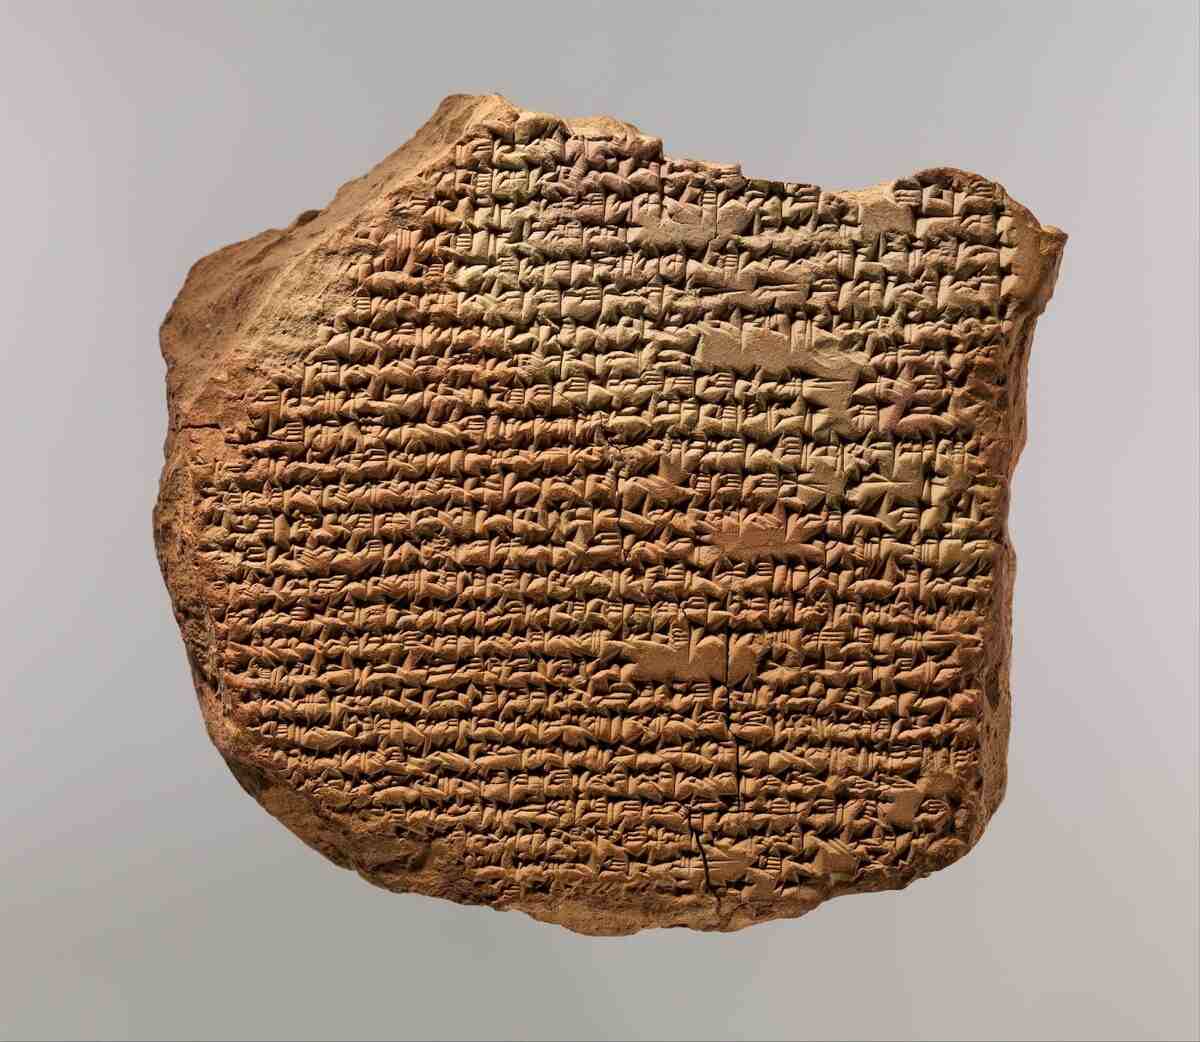 Cuneiform on clay tablet